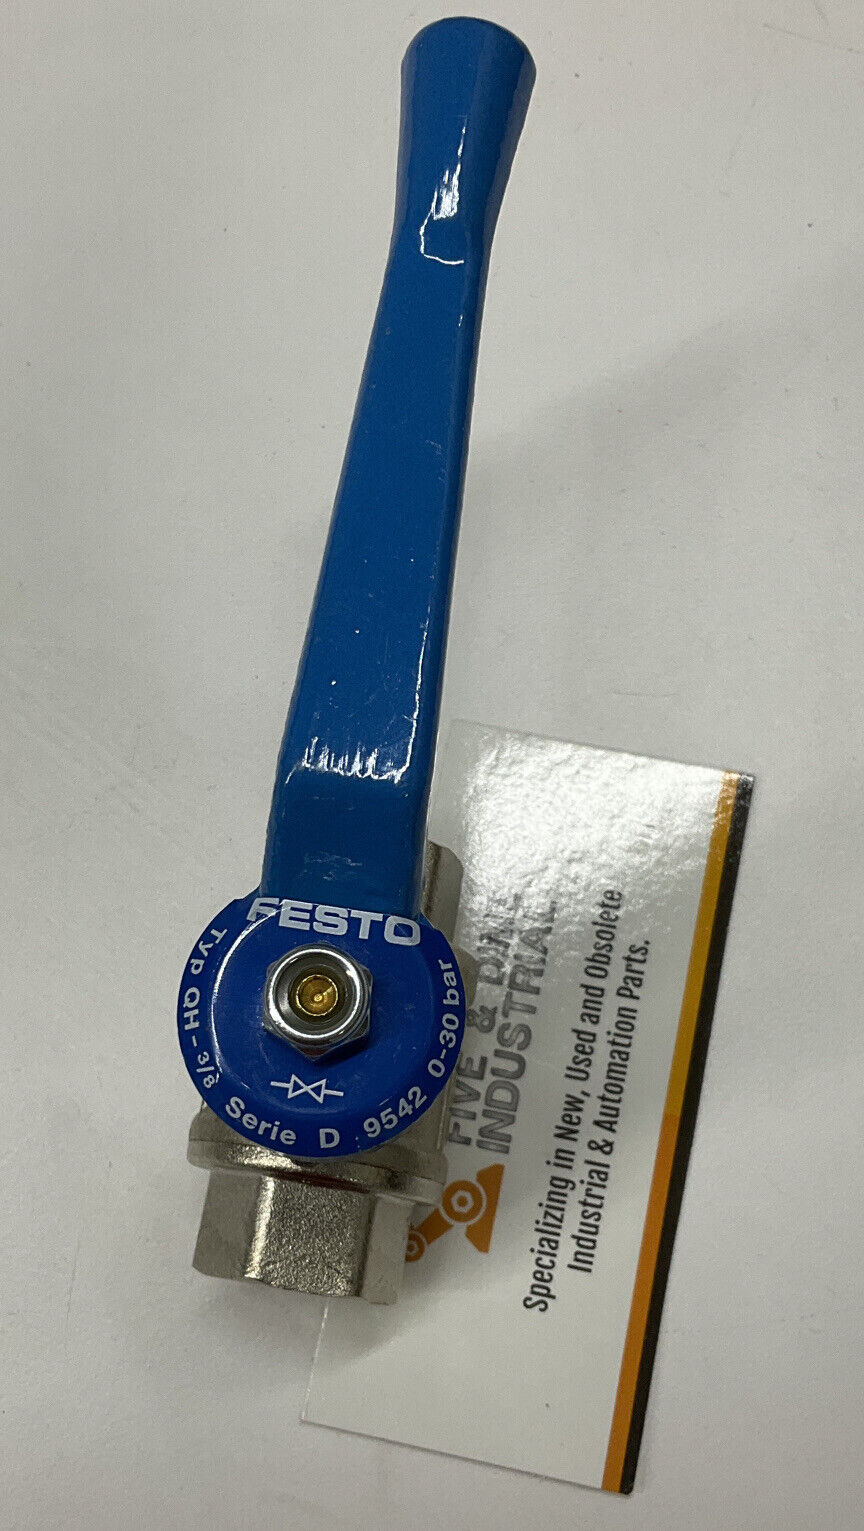 Festo 9542 Type QH-3/8 New Stainless Ball Valve 0-30 Bar (BL246)